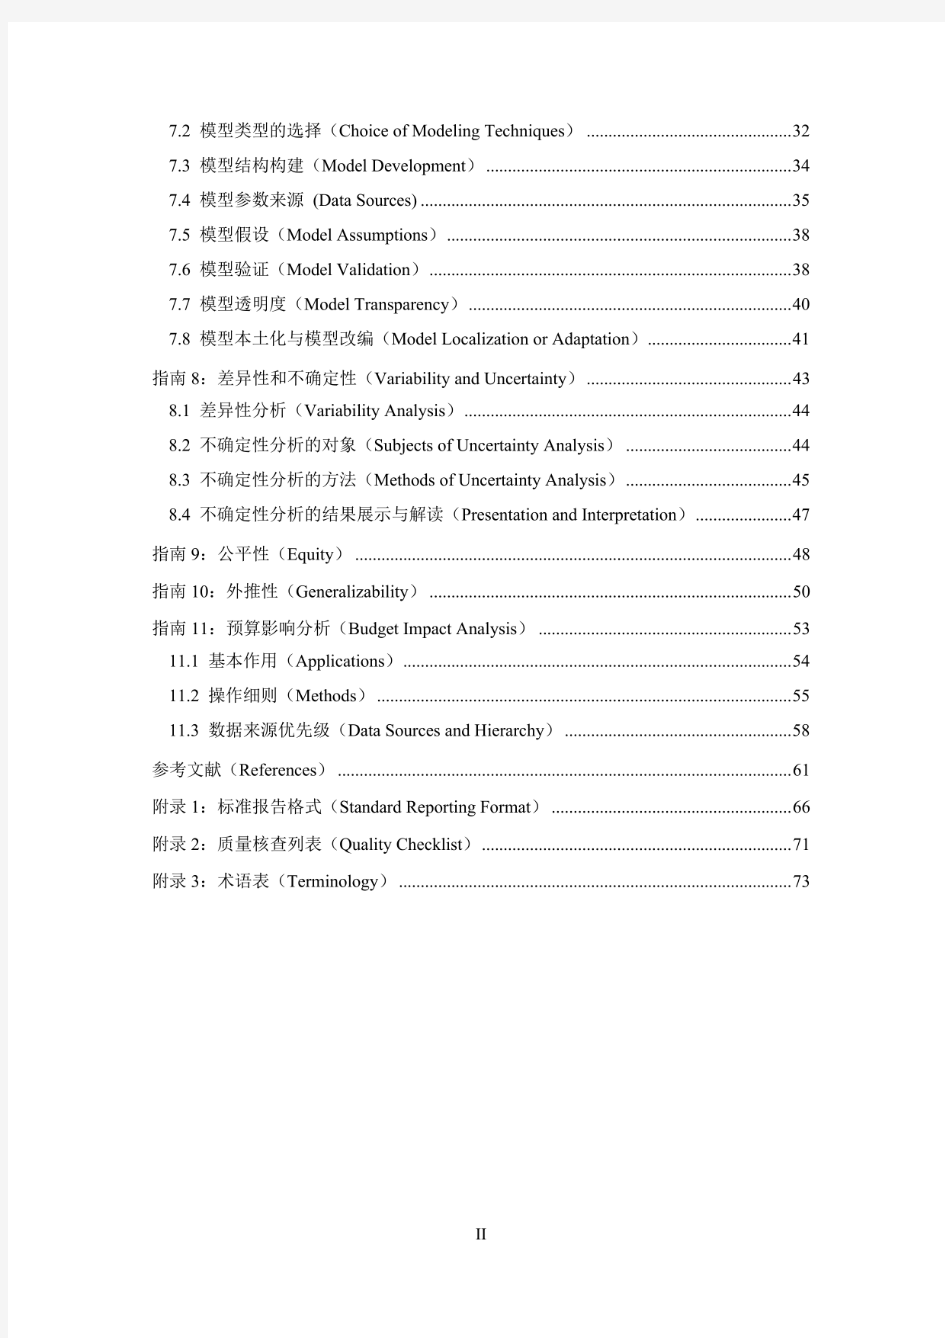 中国药物经济学评价指南2019版_1